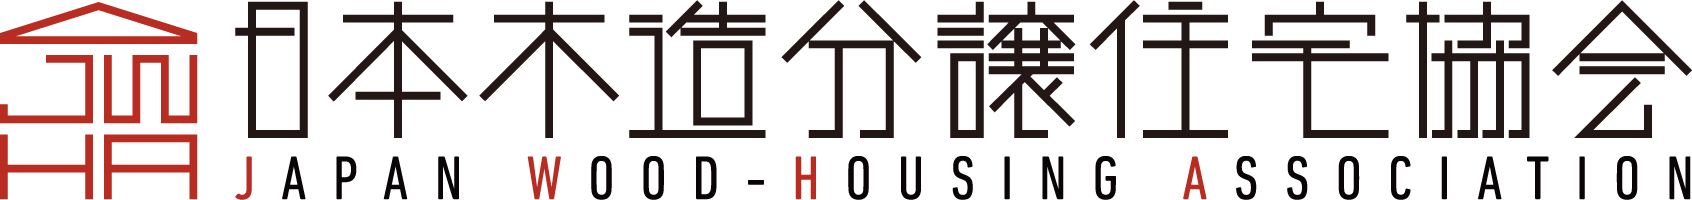 日本木造分譲住宅協会のロゴ